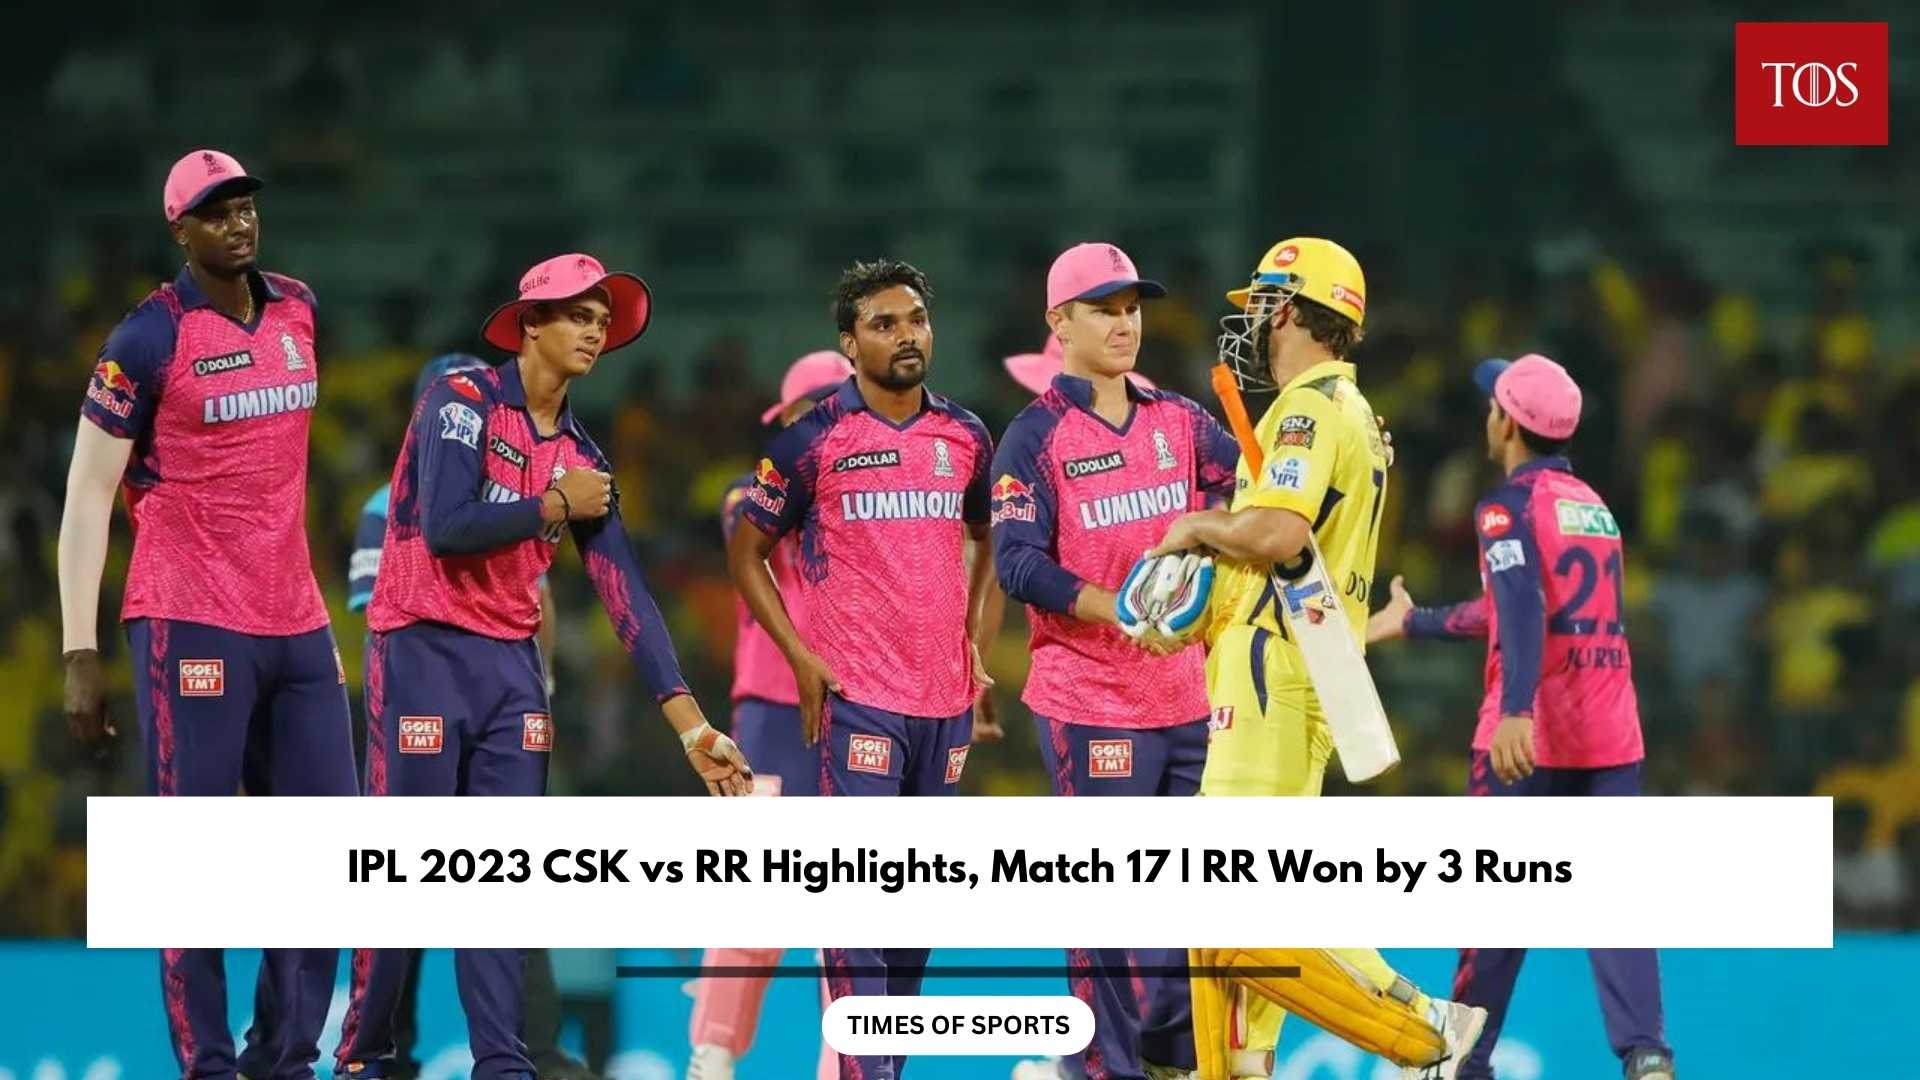 IPL 2023 CSK vs RR Highlights, Match 17 RR Won by 3 Runs